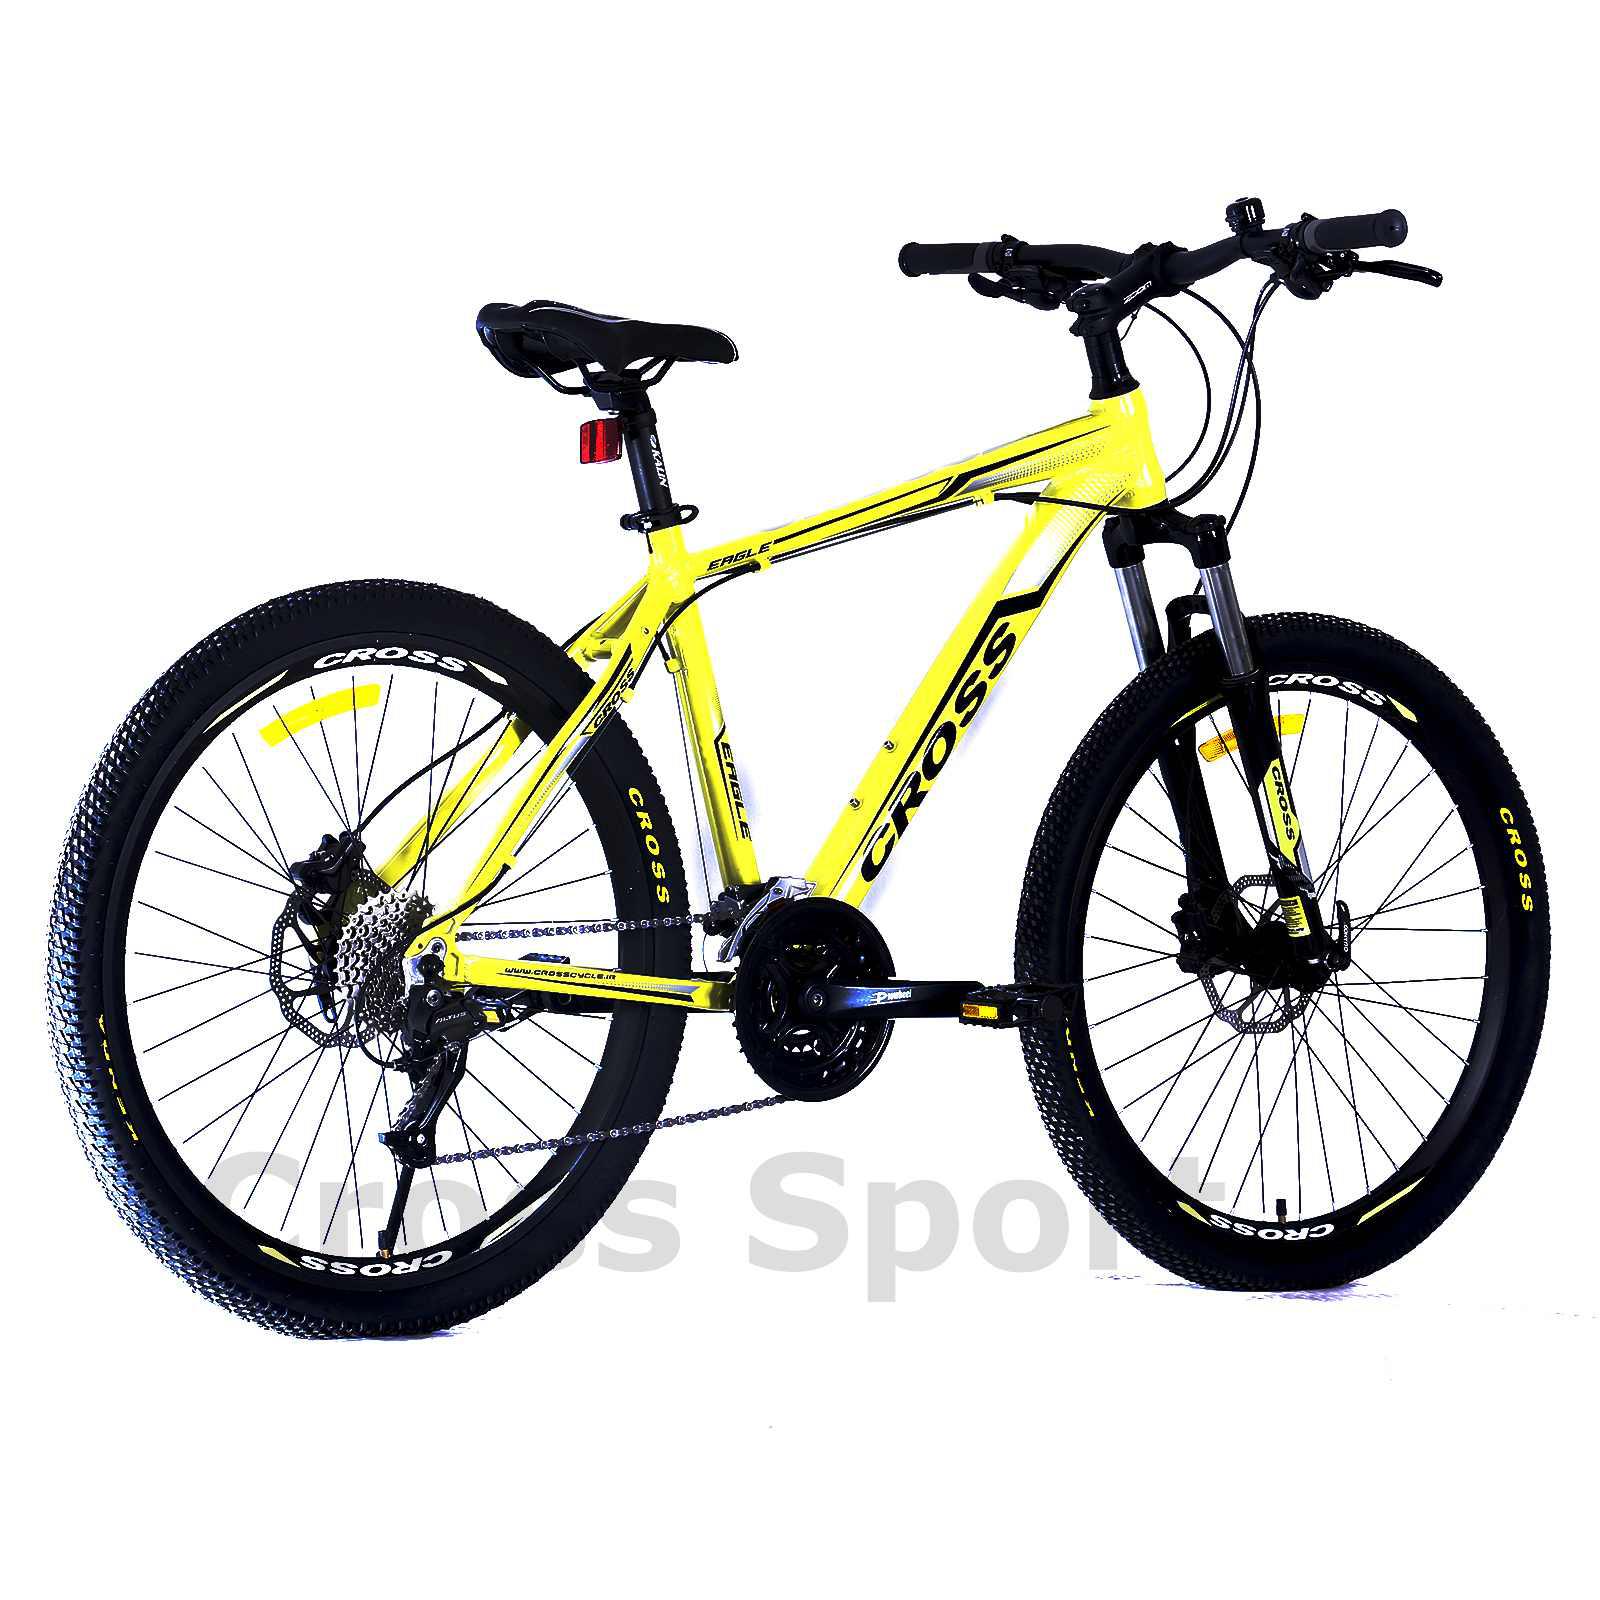 دوچرخه کوهستان- خرید دوچرخه کوهستان- کراس اسپرت - دوچرخه ایگل - eagle bike - crosssport